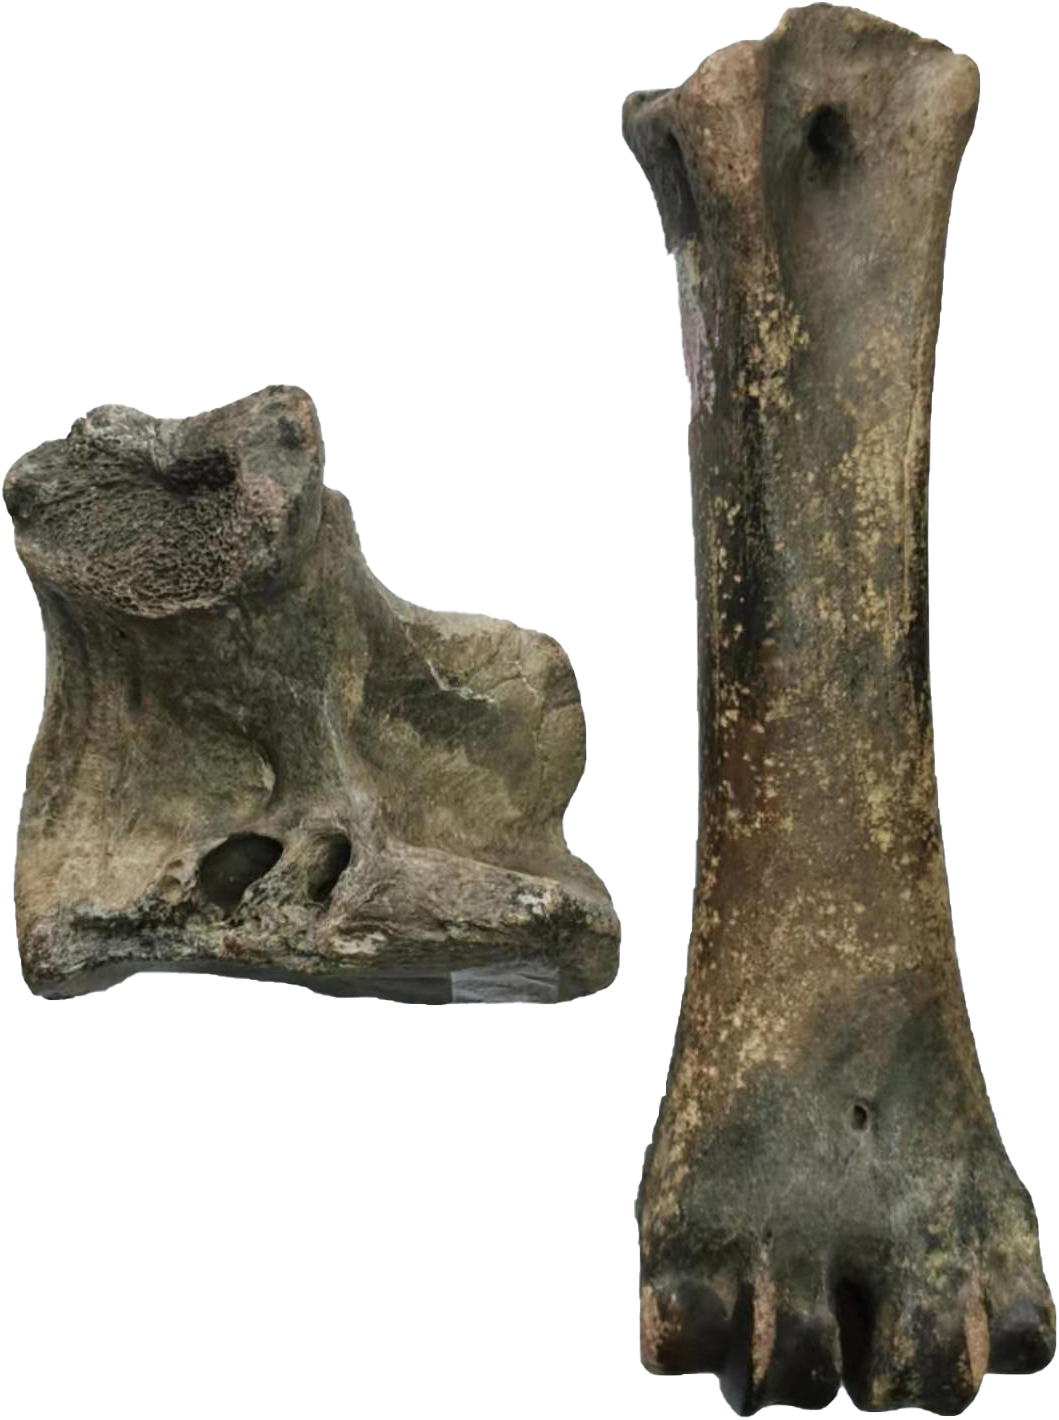 出土的虎骨化石图片